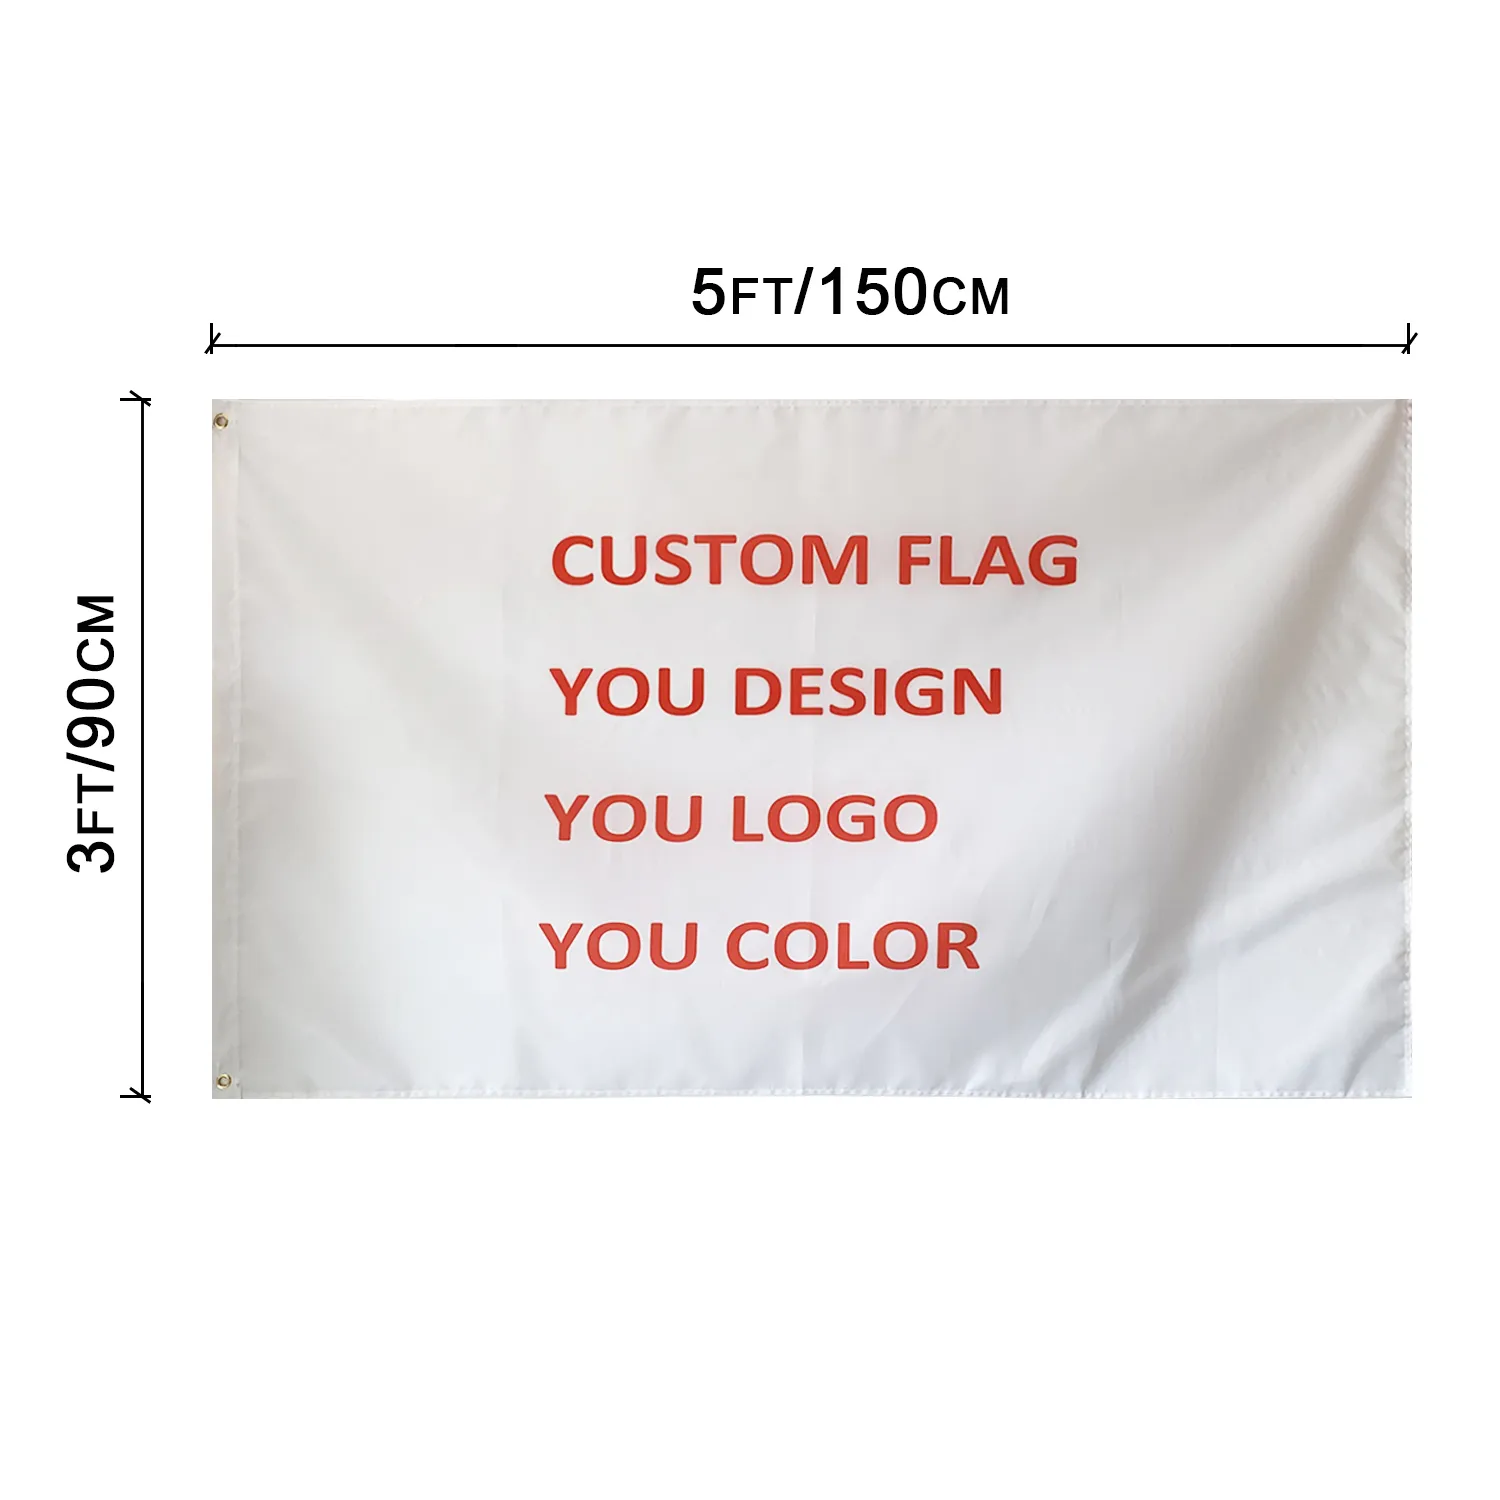 3 x 5 FT benutzerdefinierte Flagge 100D Polyester Messingösen hohe Qualität günstig kostenloser Versand individuelles Logo-Design Outdoor-Teamsport-Werbeclub